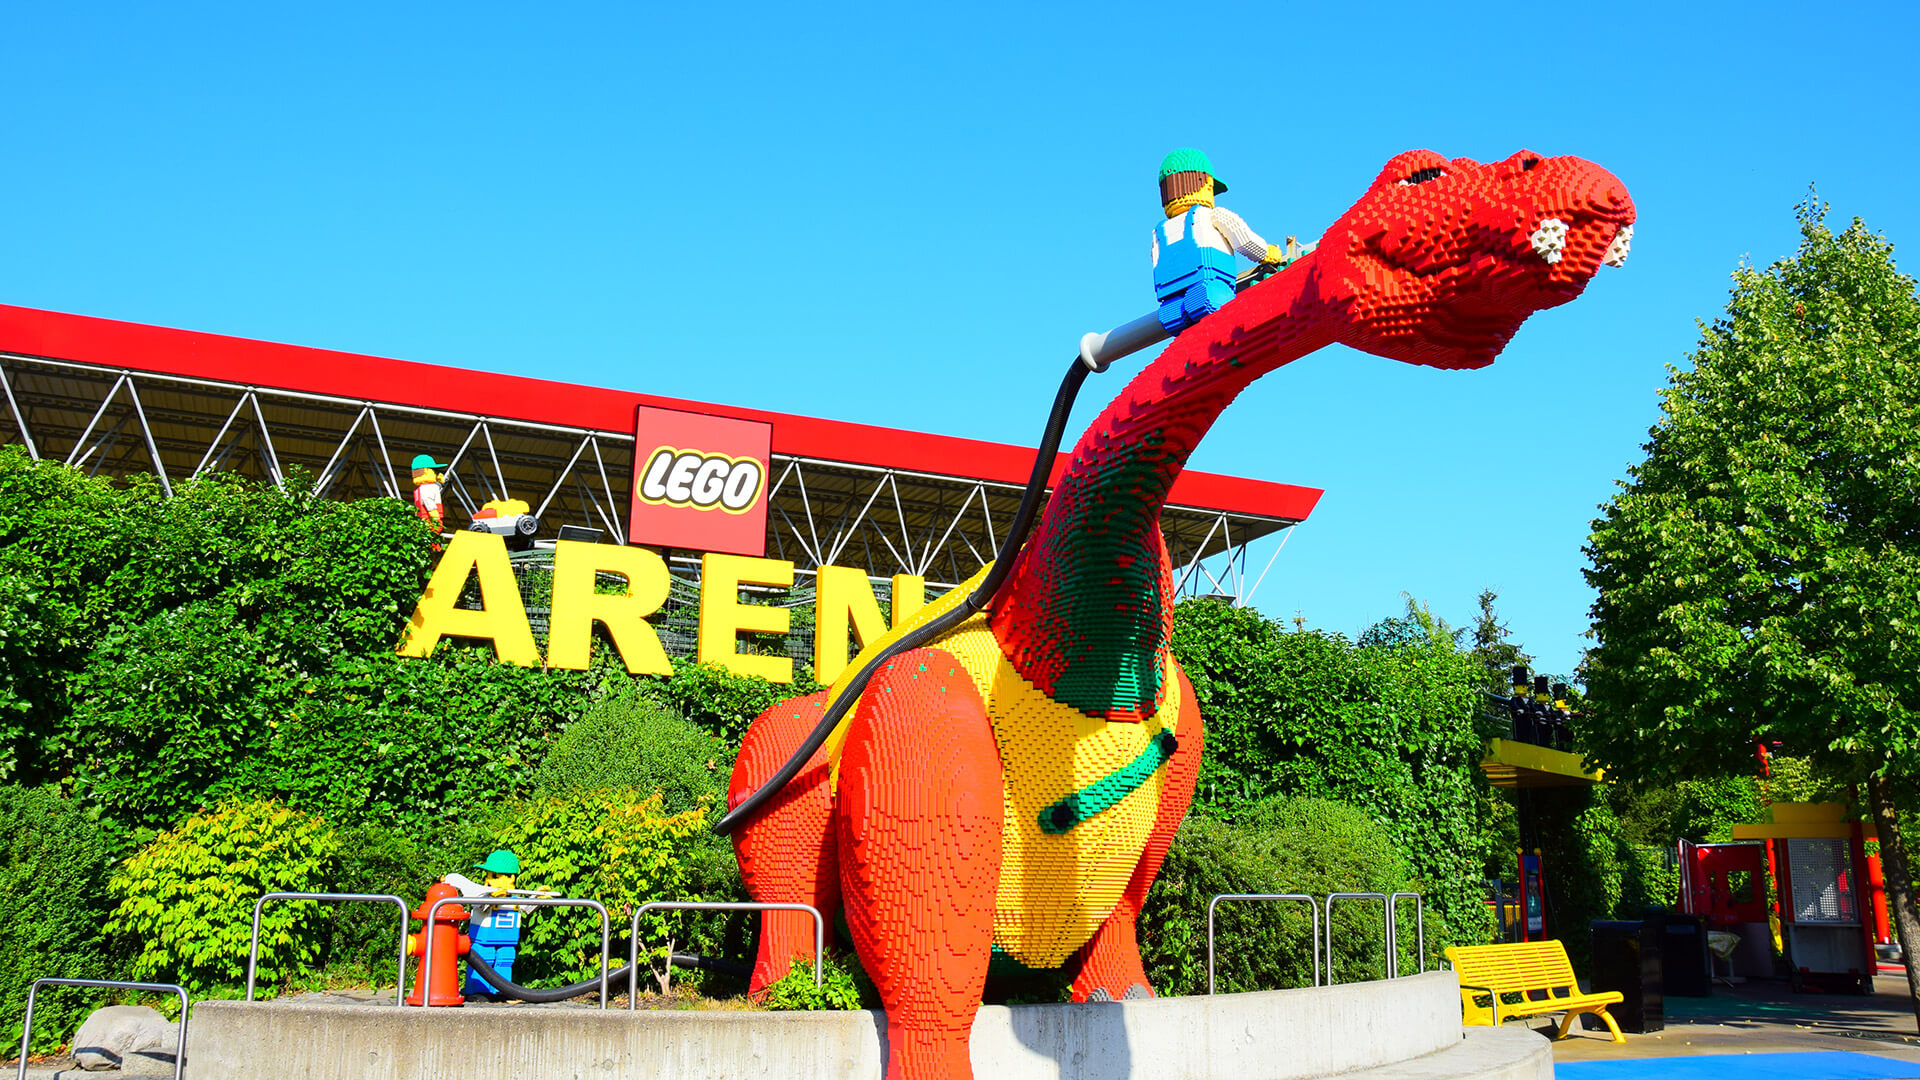 LEGOLAND LEGO Arena Shows